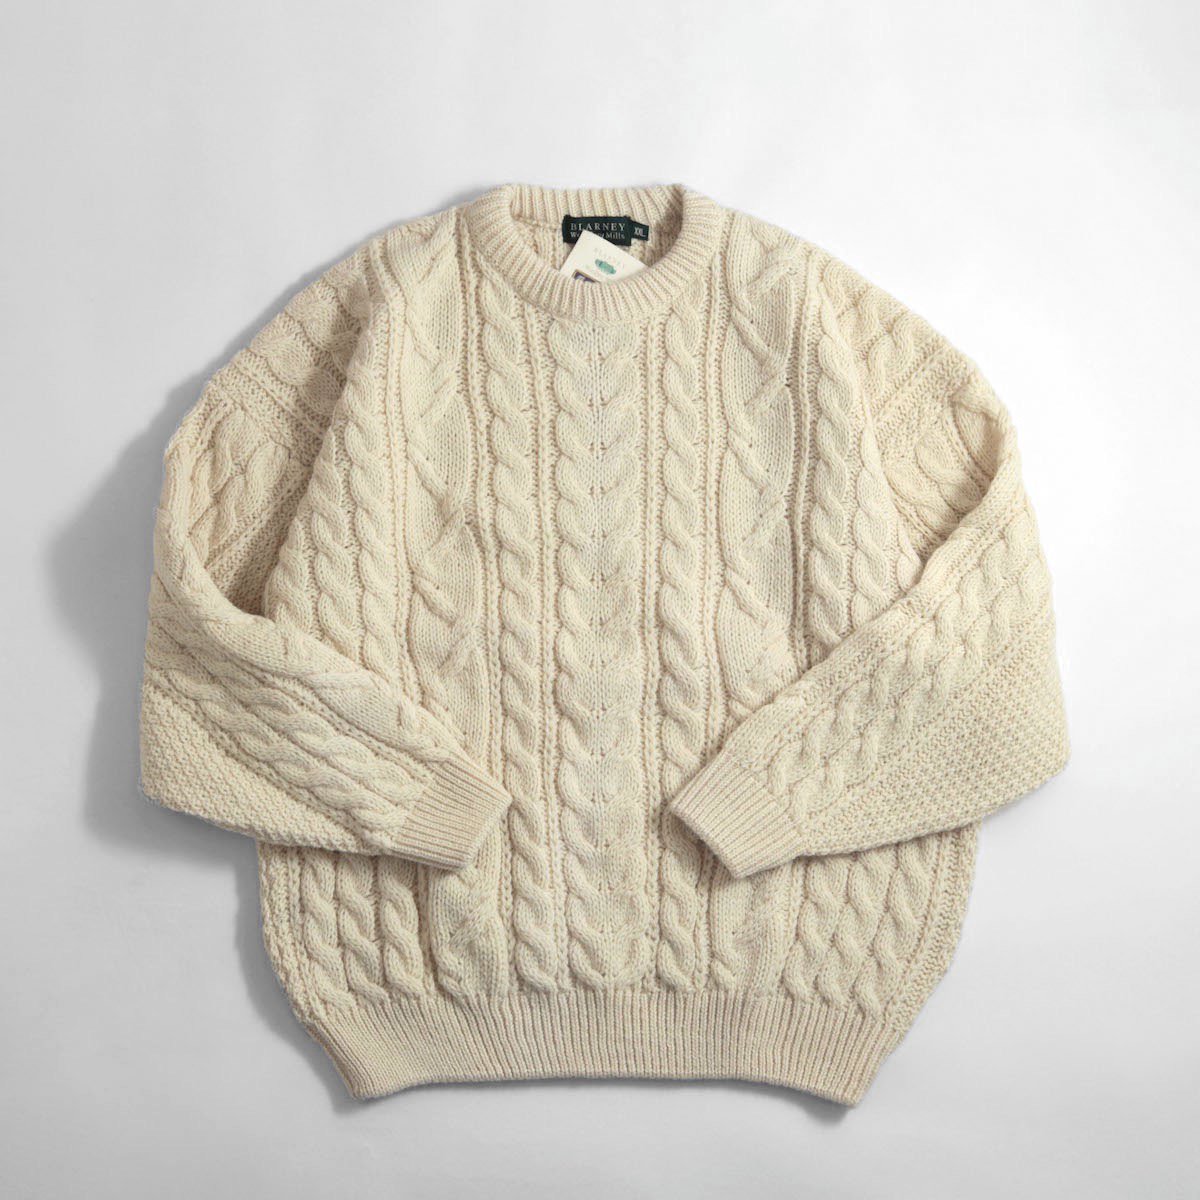 ニット/セーター最高のケーブル編み BLARNEY アランニット フィッシャーマン セーター